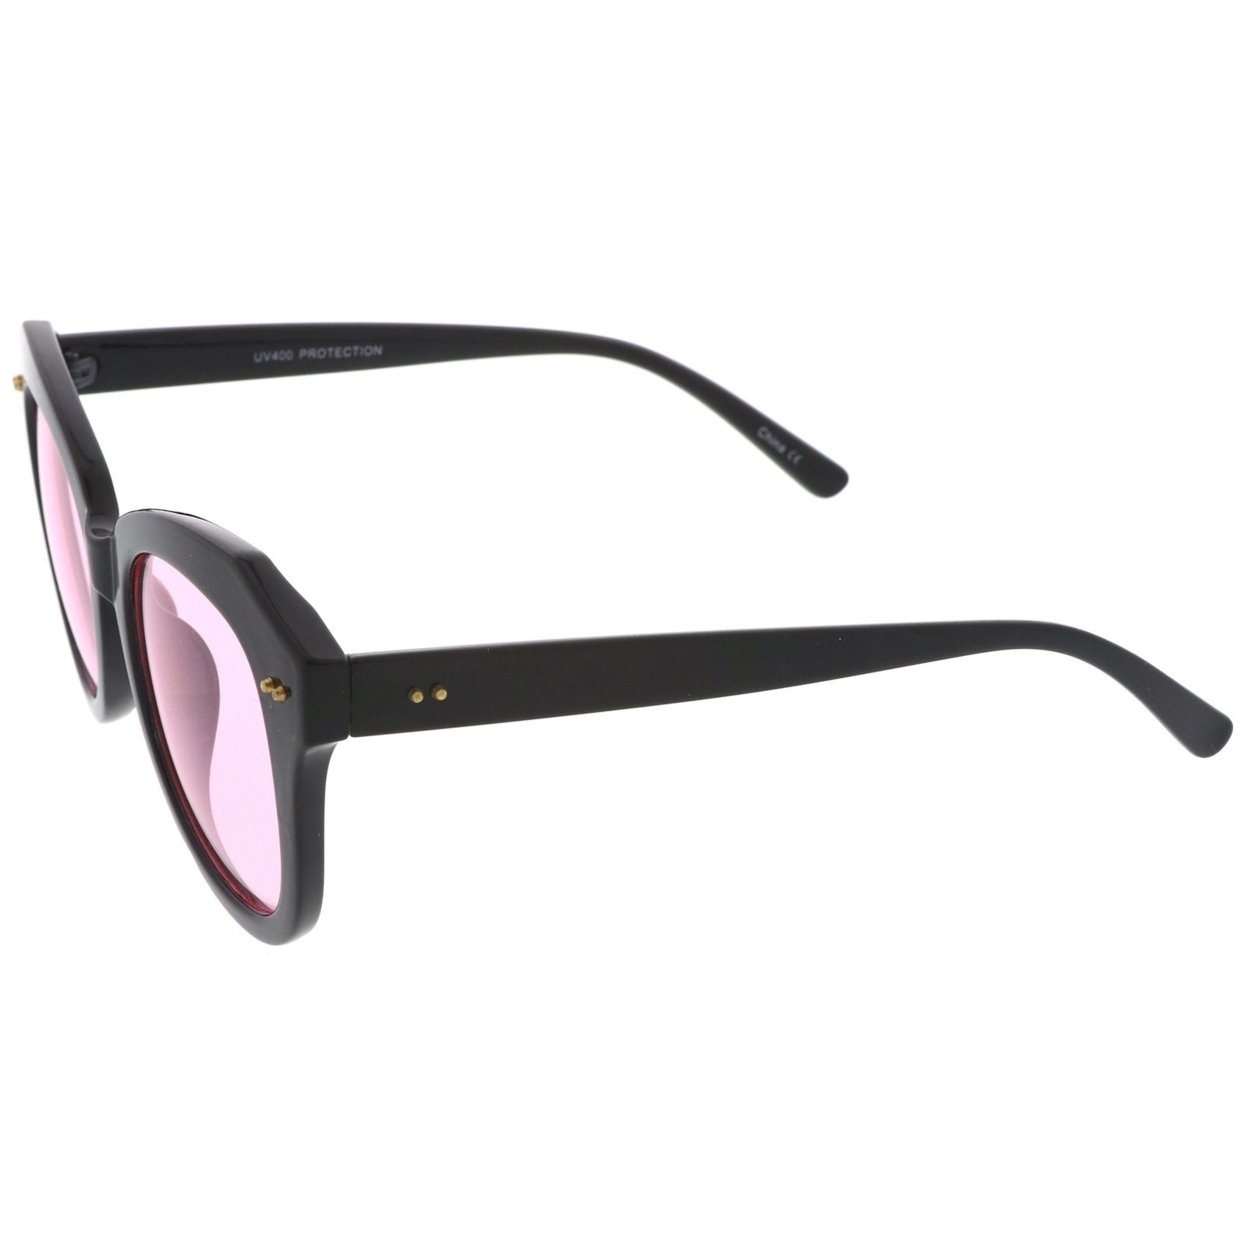 Women's Oversize Horn Rimmed Colored Round Lens Cat Eye Sunglasses 52mm - Black / Blue